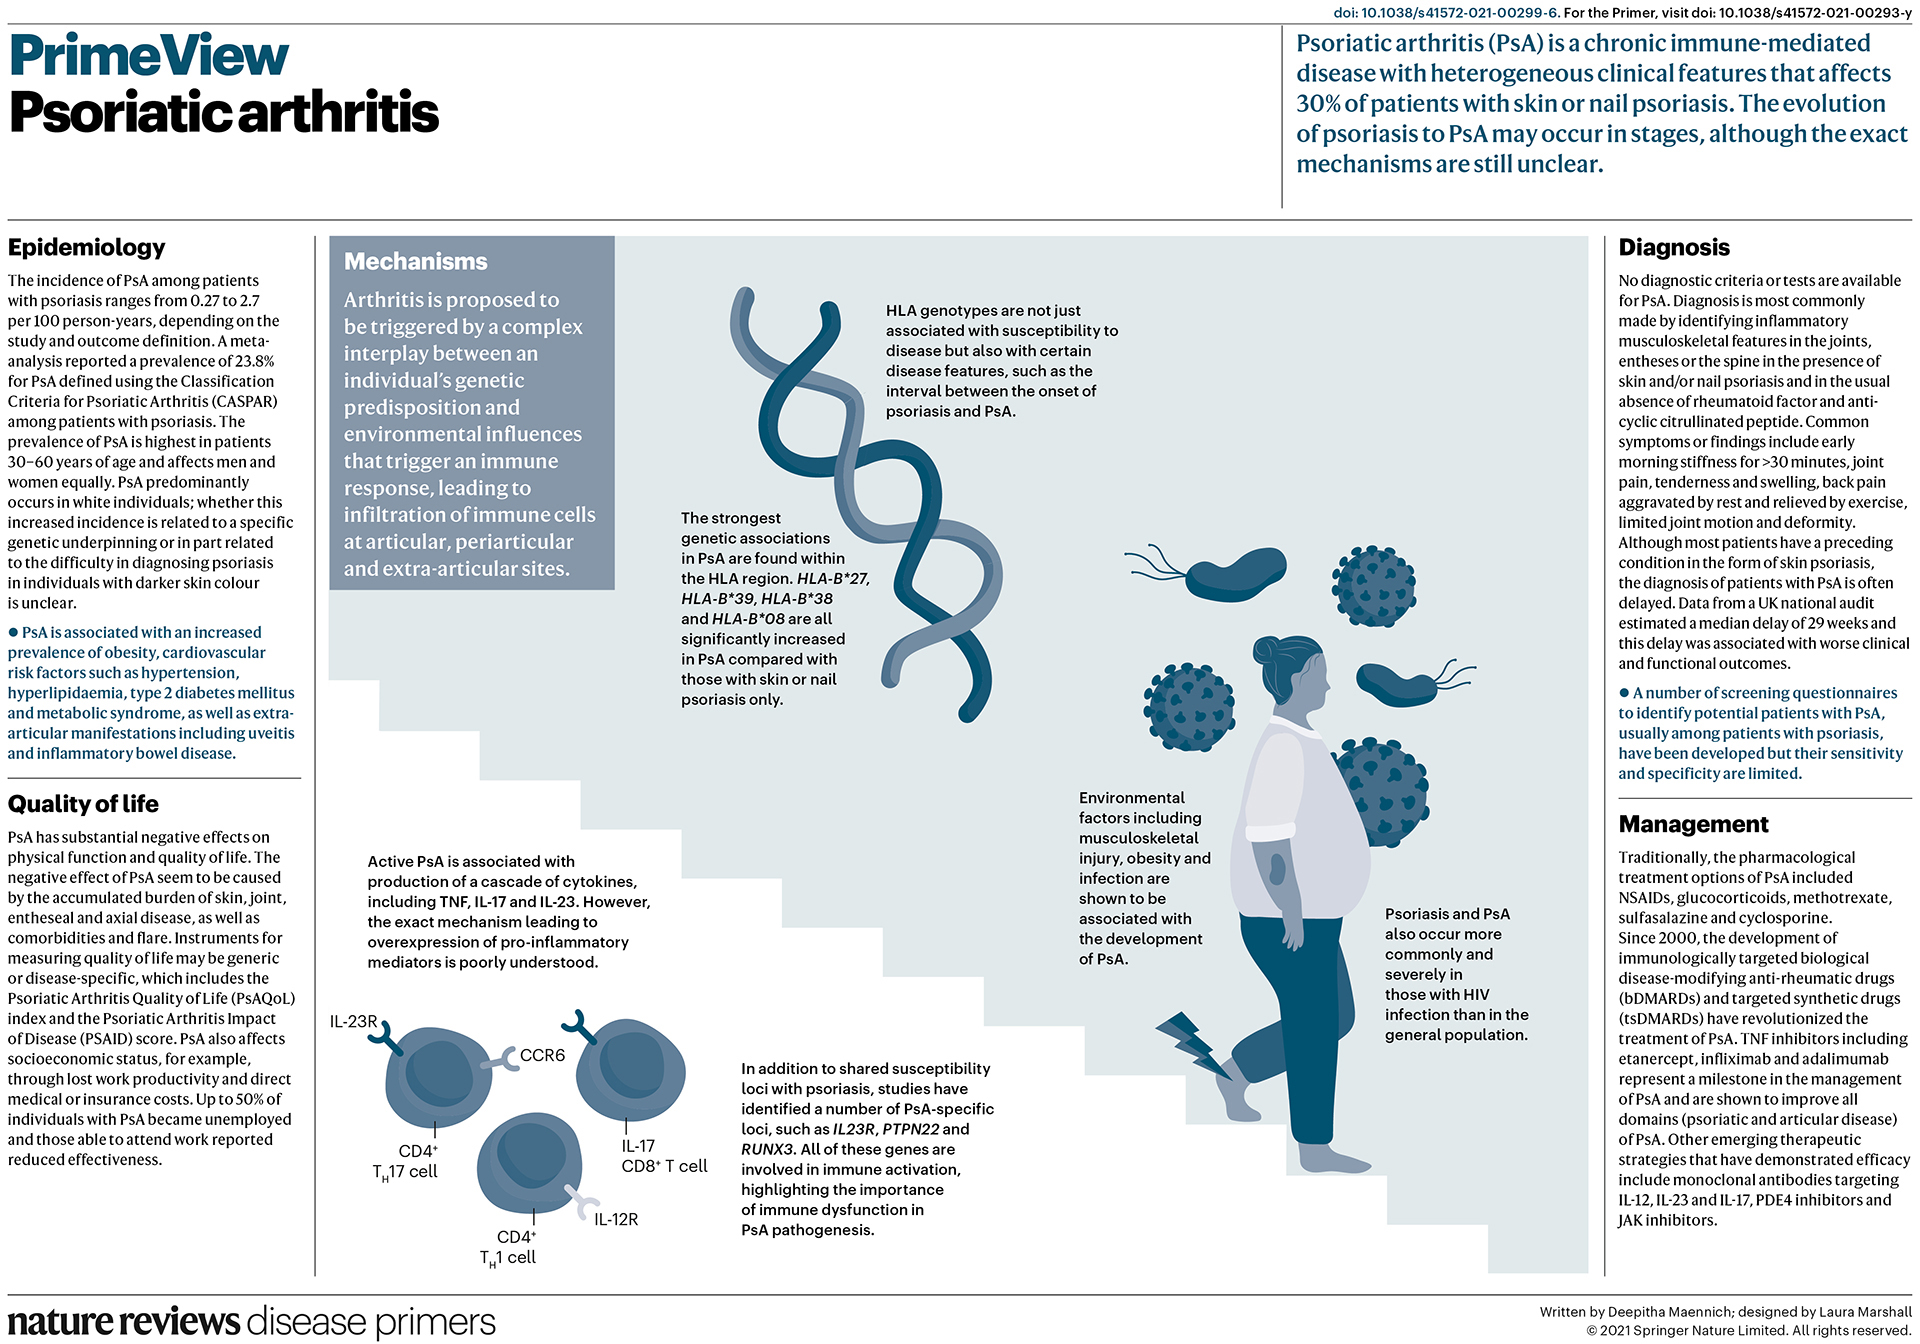 Psoriatic arthritis | Nature Reviews Disease Primers